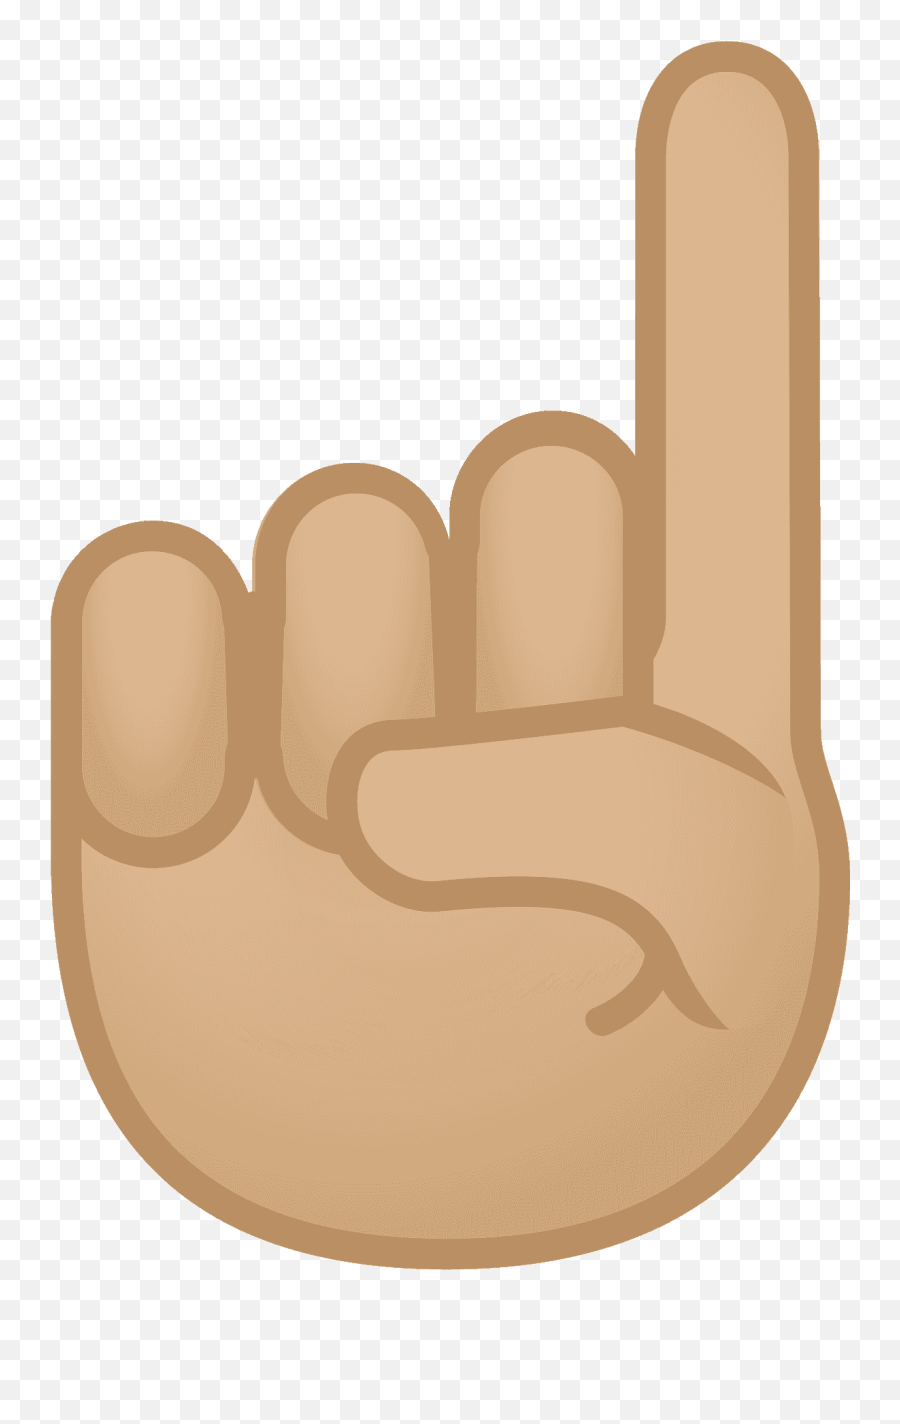 Medium - Emoji Dedo Indice Arriba,Pointing Up Emoji